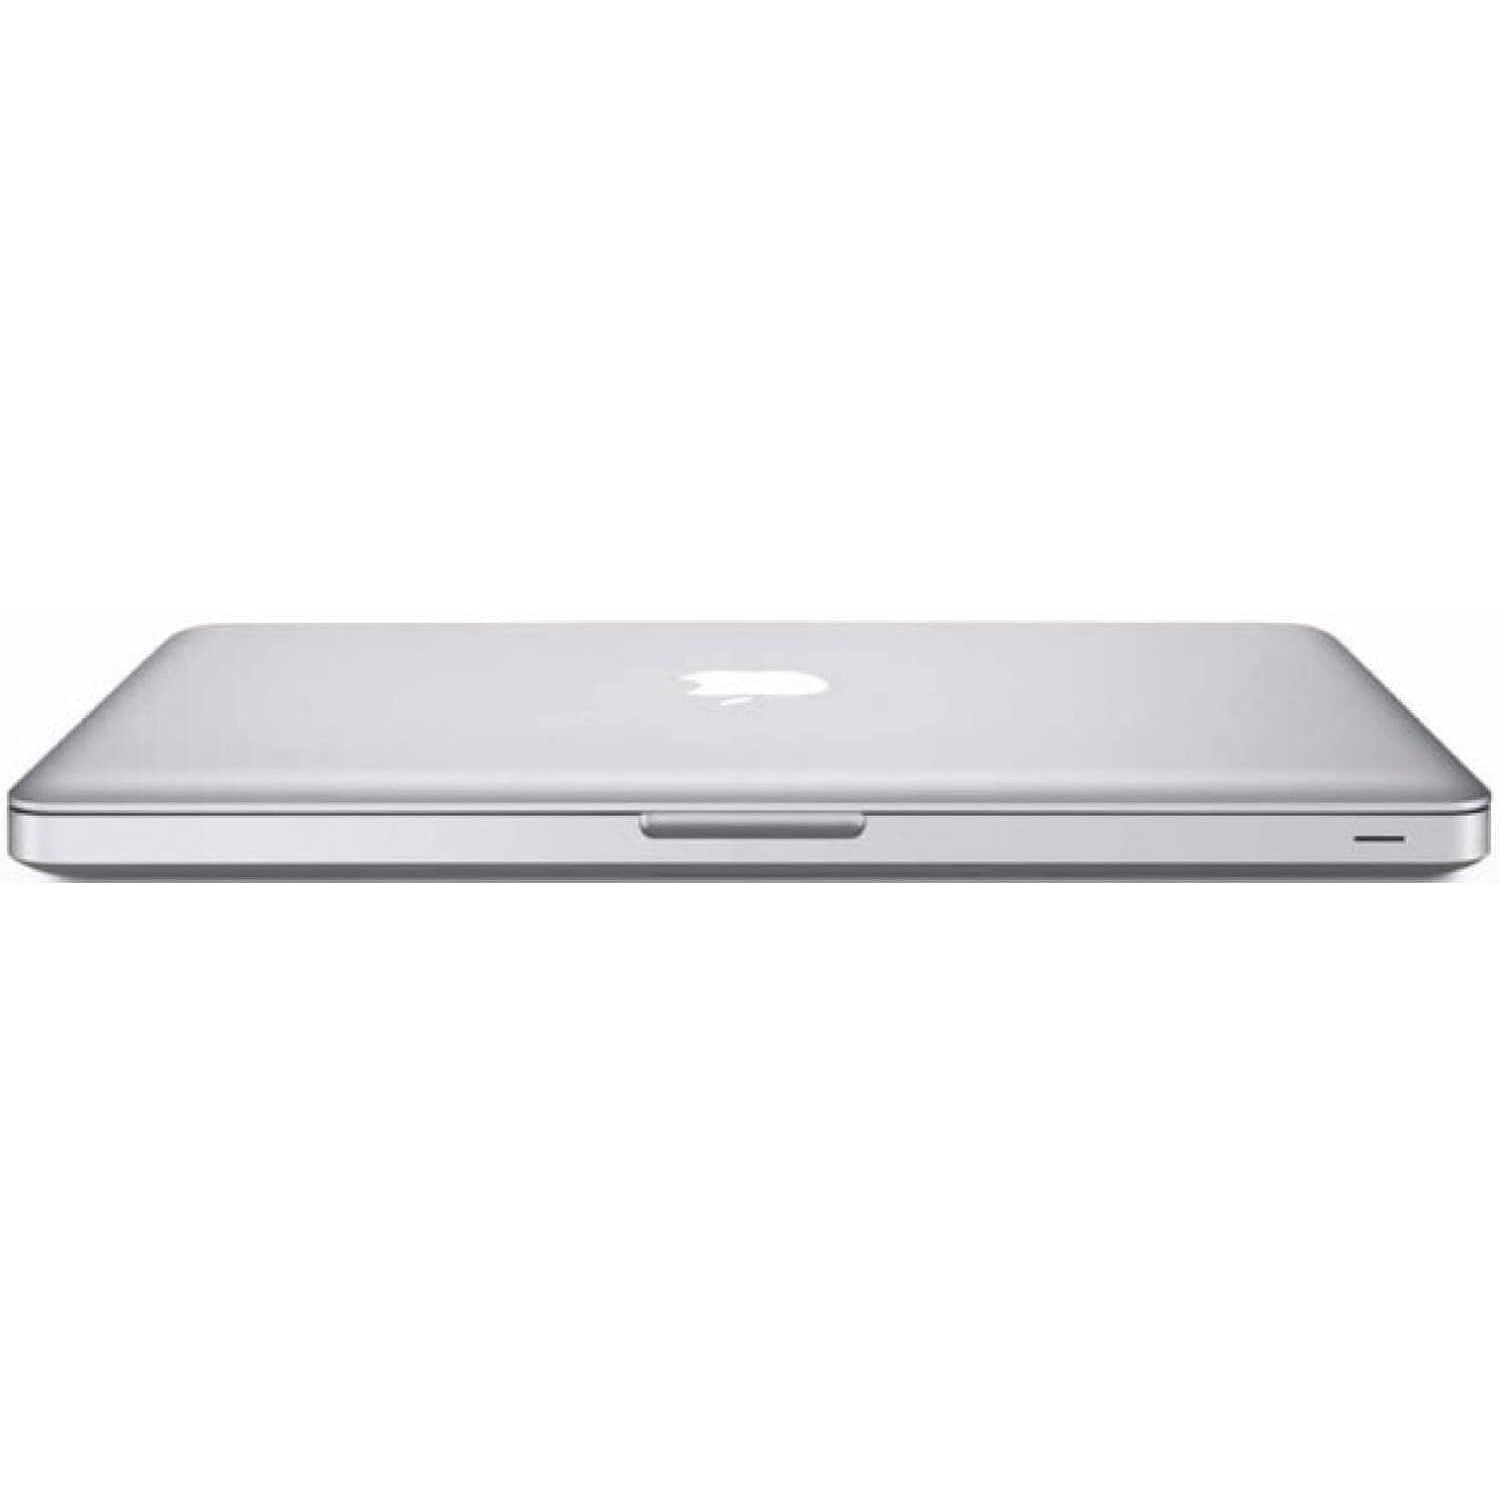 Apple Macbook Pro (MD101LL/A) Intel Core i5-3210M 4GB RAM 1TB - Silver